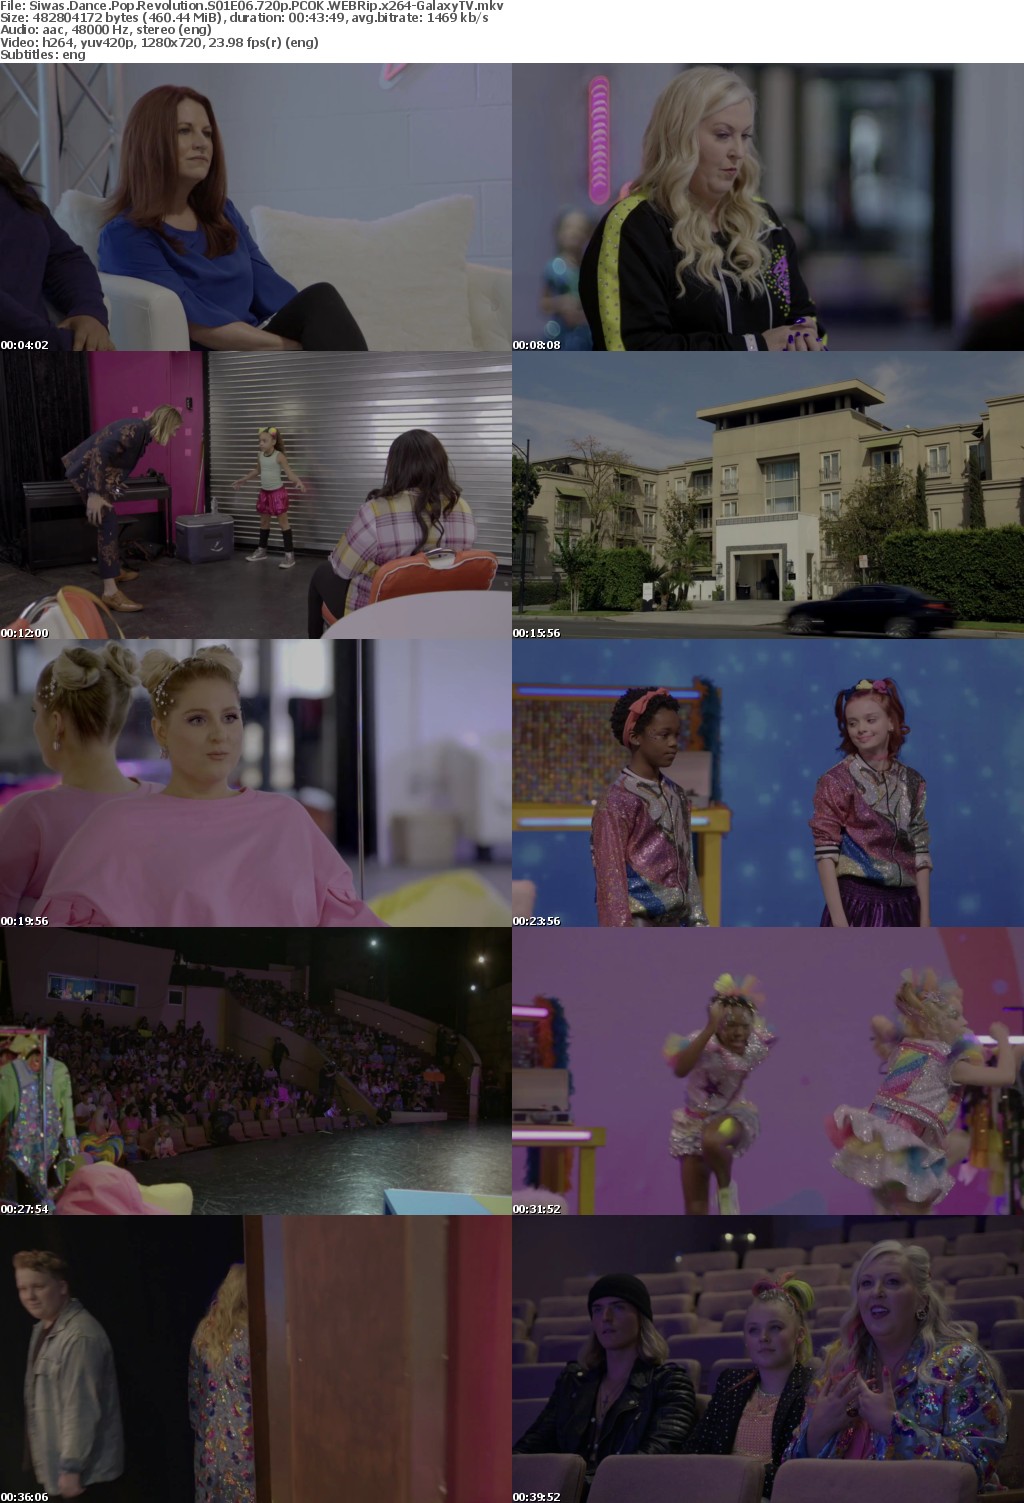 Siwas Dance Pop Revolution S01 COMPLETE 720p PCOK WEBRip x264-GalaxyTV